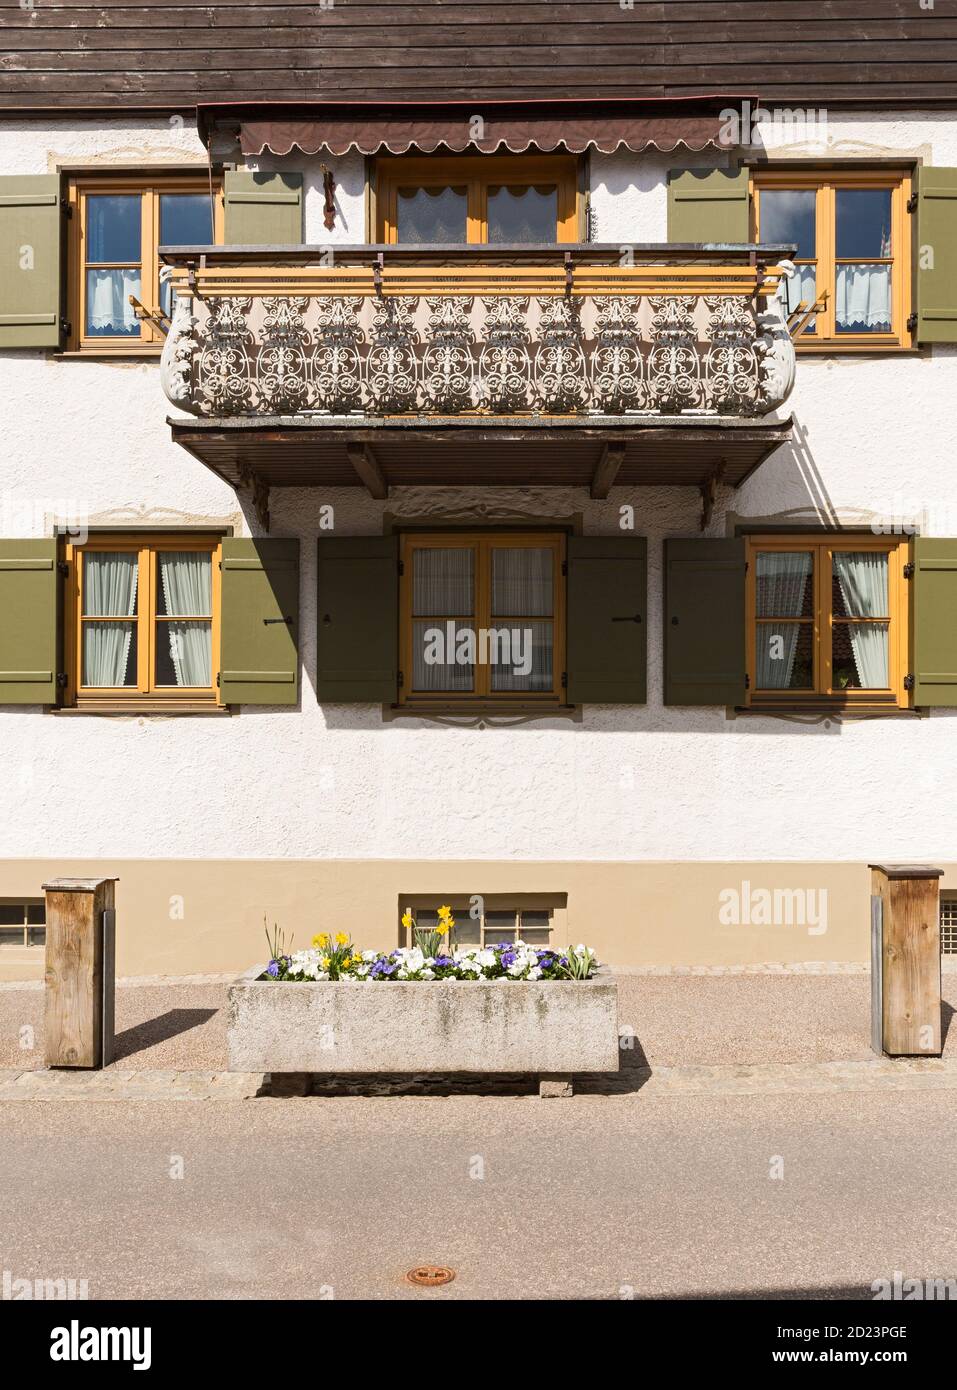 Oberstdorf, Bauernhaus, Detalle, Balkon, Gelaender, Bayern, Deutschland Foto de stock